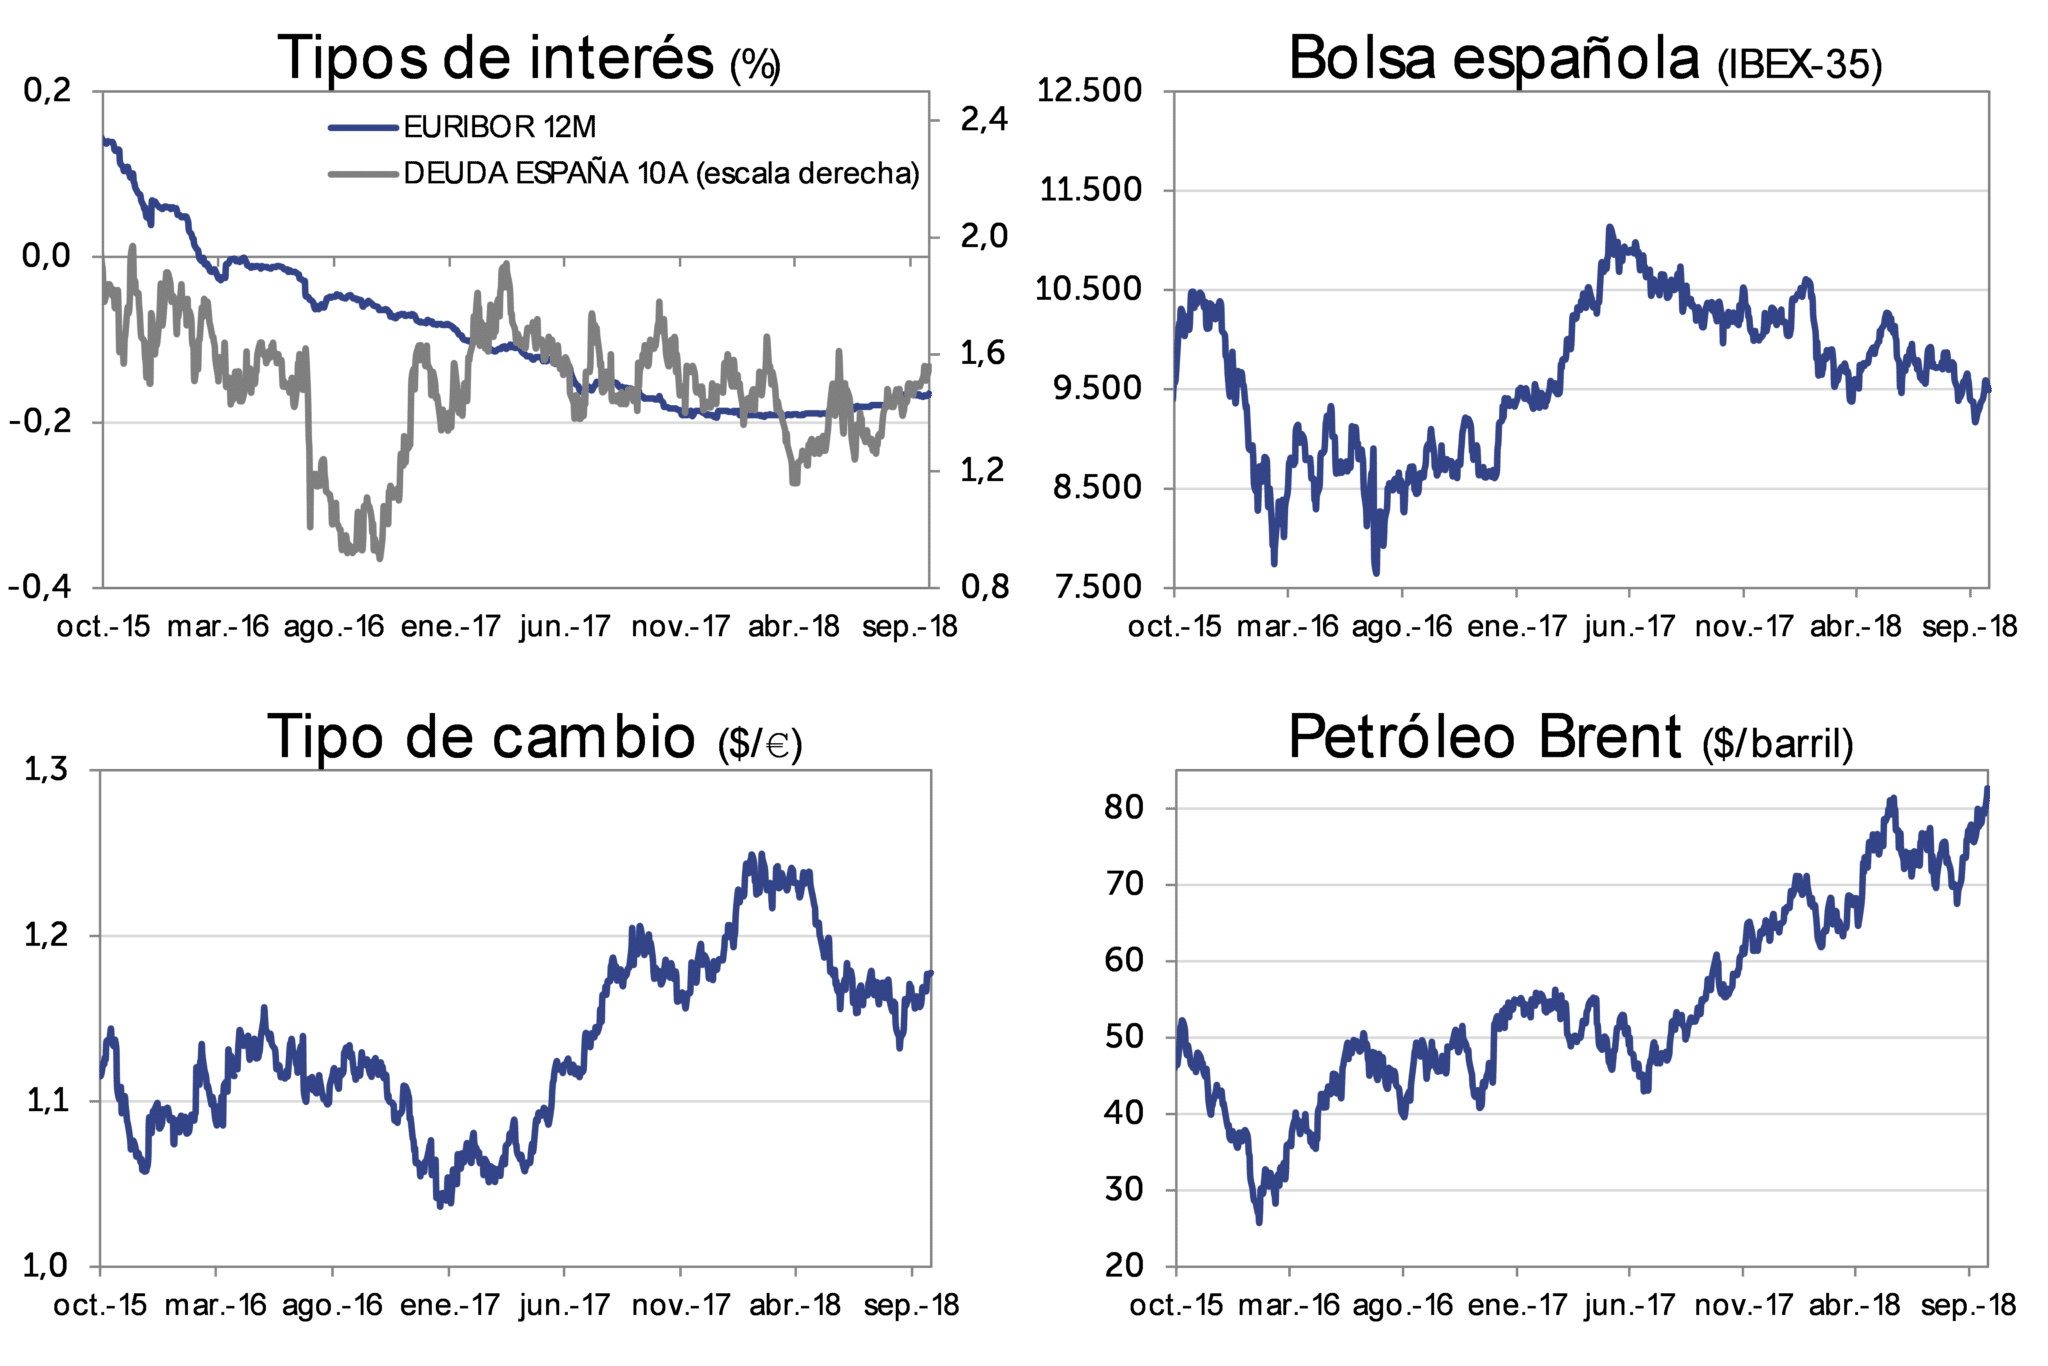 Evolución Mercado sep-2018: Tipos de interés, bolsa española (IBEX-35), Tipo de cambio (dolar/euro), Petróleo Brent (dolar/barril)